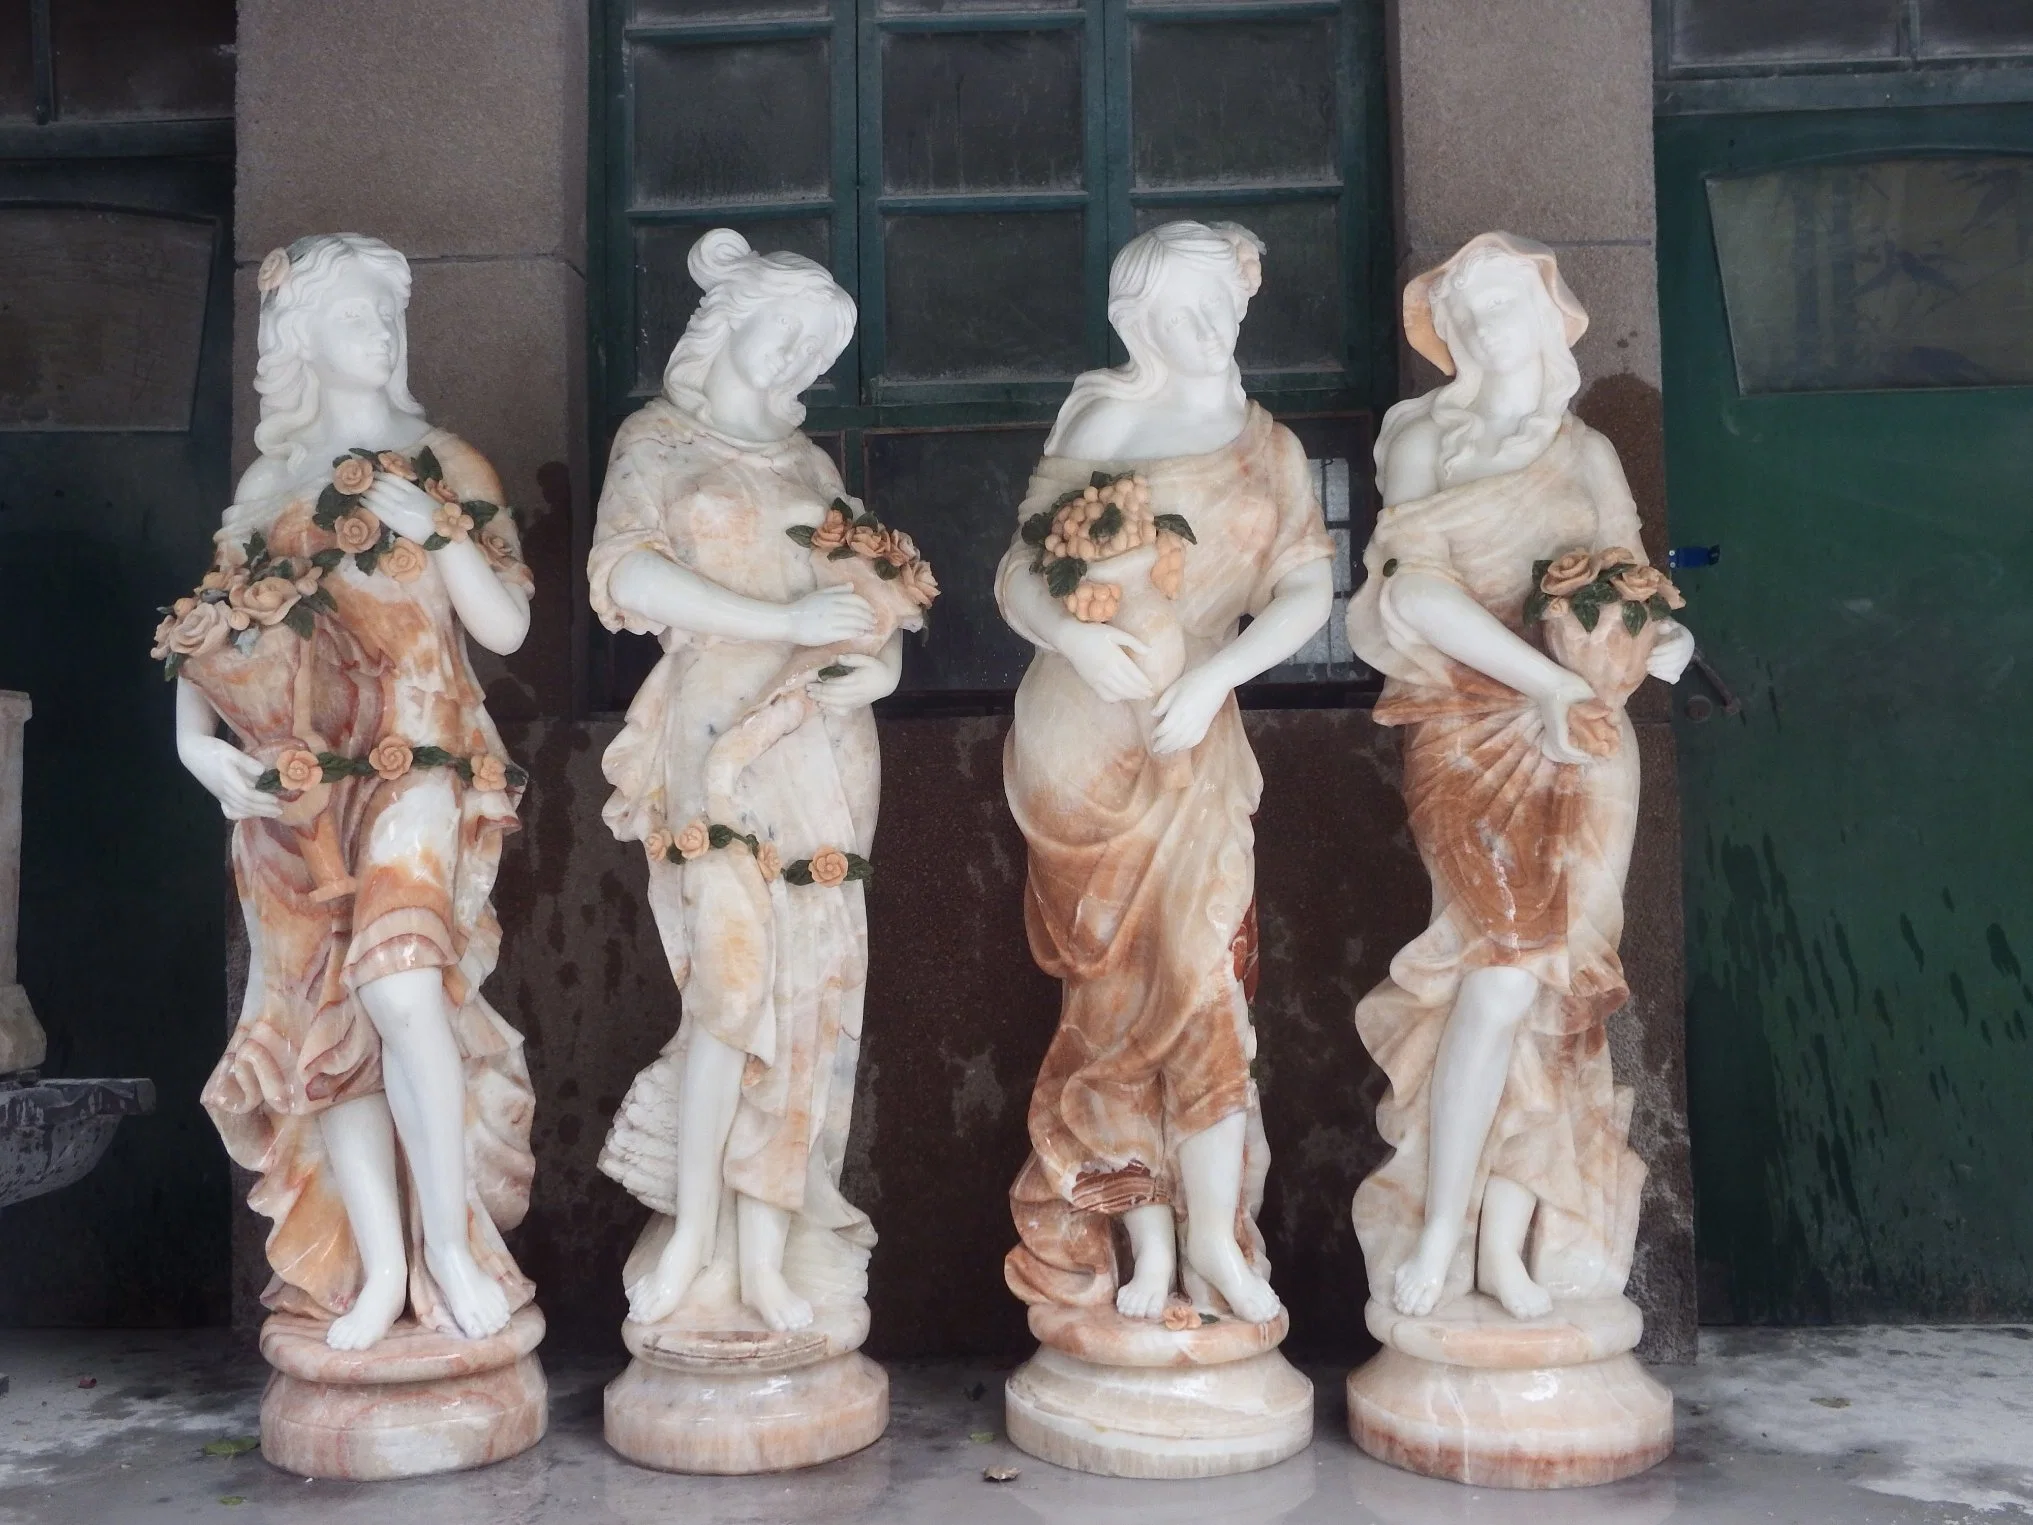 أربعة شخصيات خارجية رائعة مع ديكور أزهار وتمثال حجرى رخامى النحت (SYMS-154)